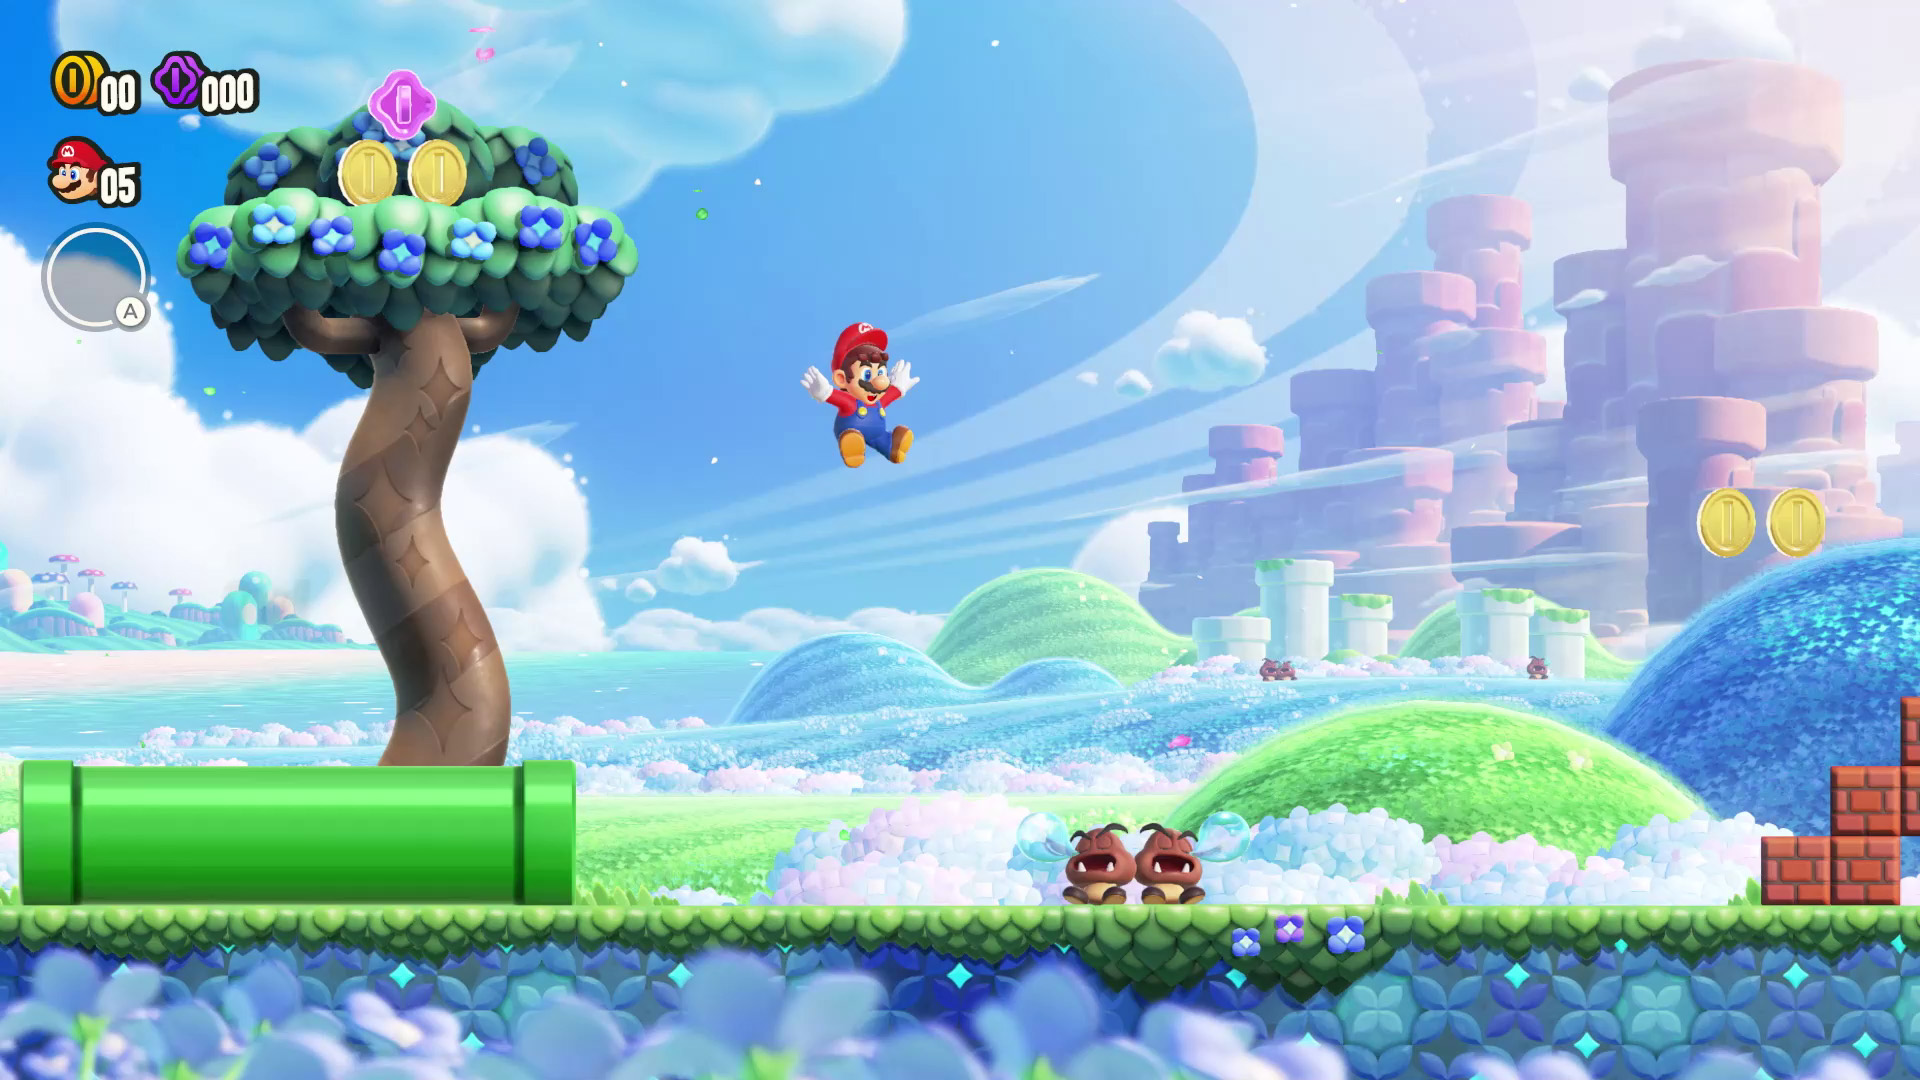 Super Mario Bros. Wonder – Análise – Starbit